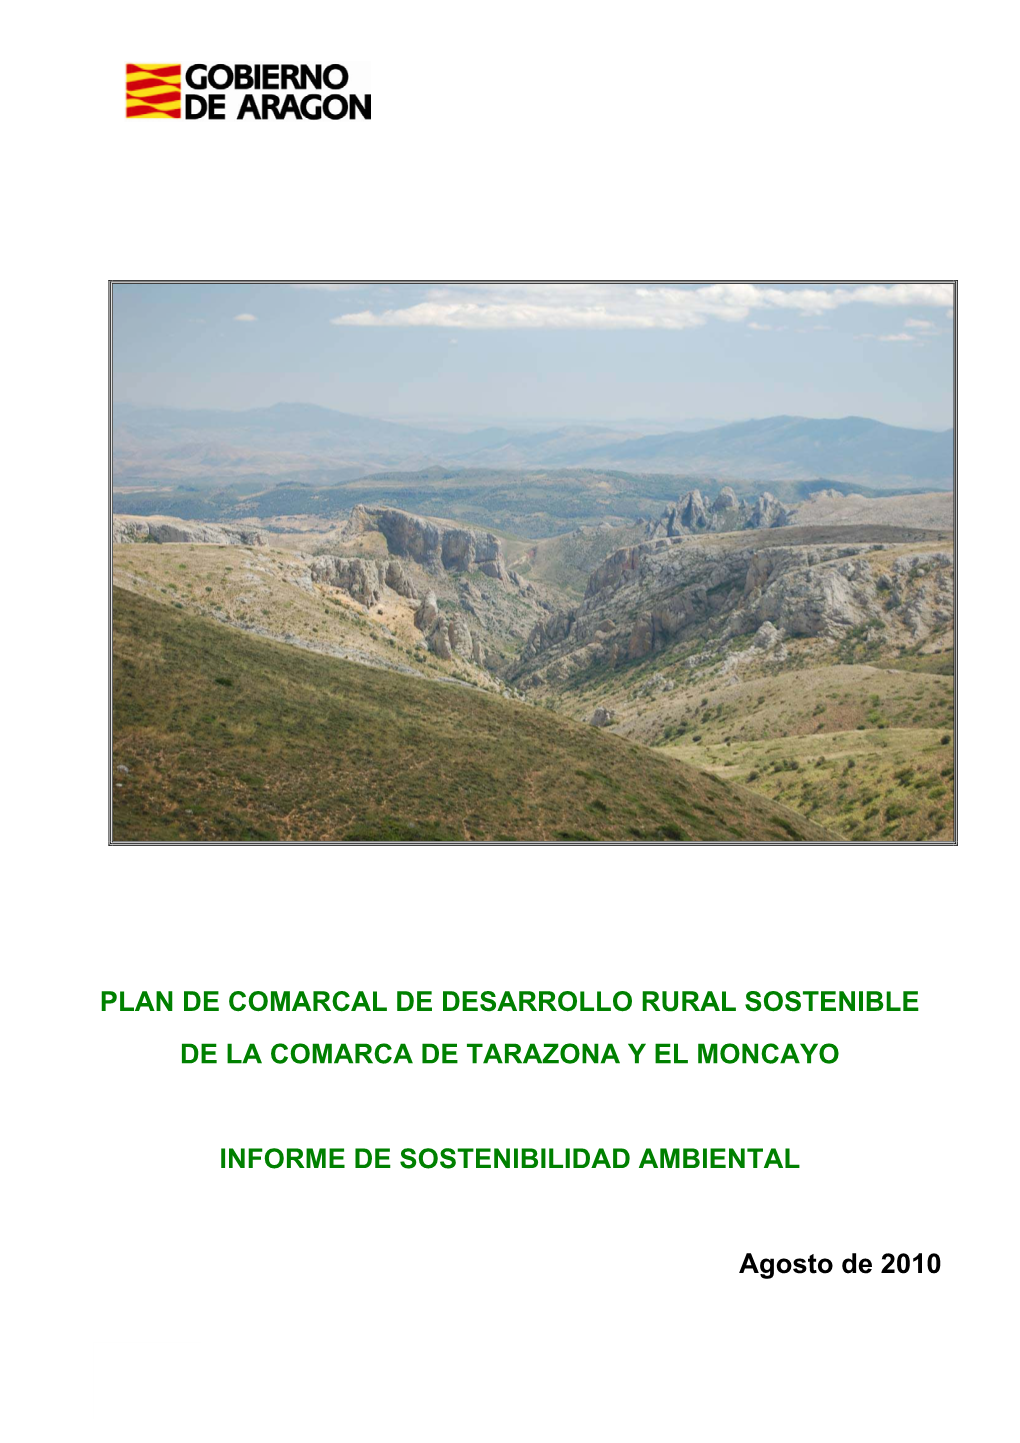 Plan De Comarcal De Desarrollo Rural Sostenible De La Comarca De Tarazona Y El Moncayo Informe De Sostenibilidad Ambiental